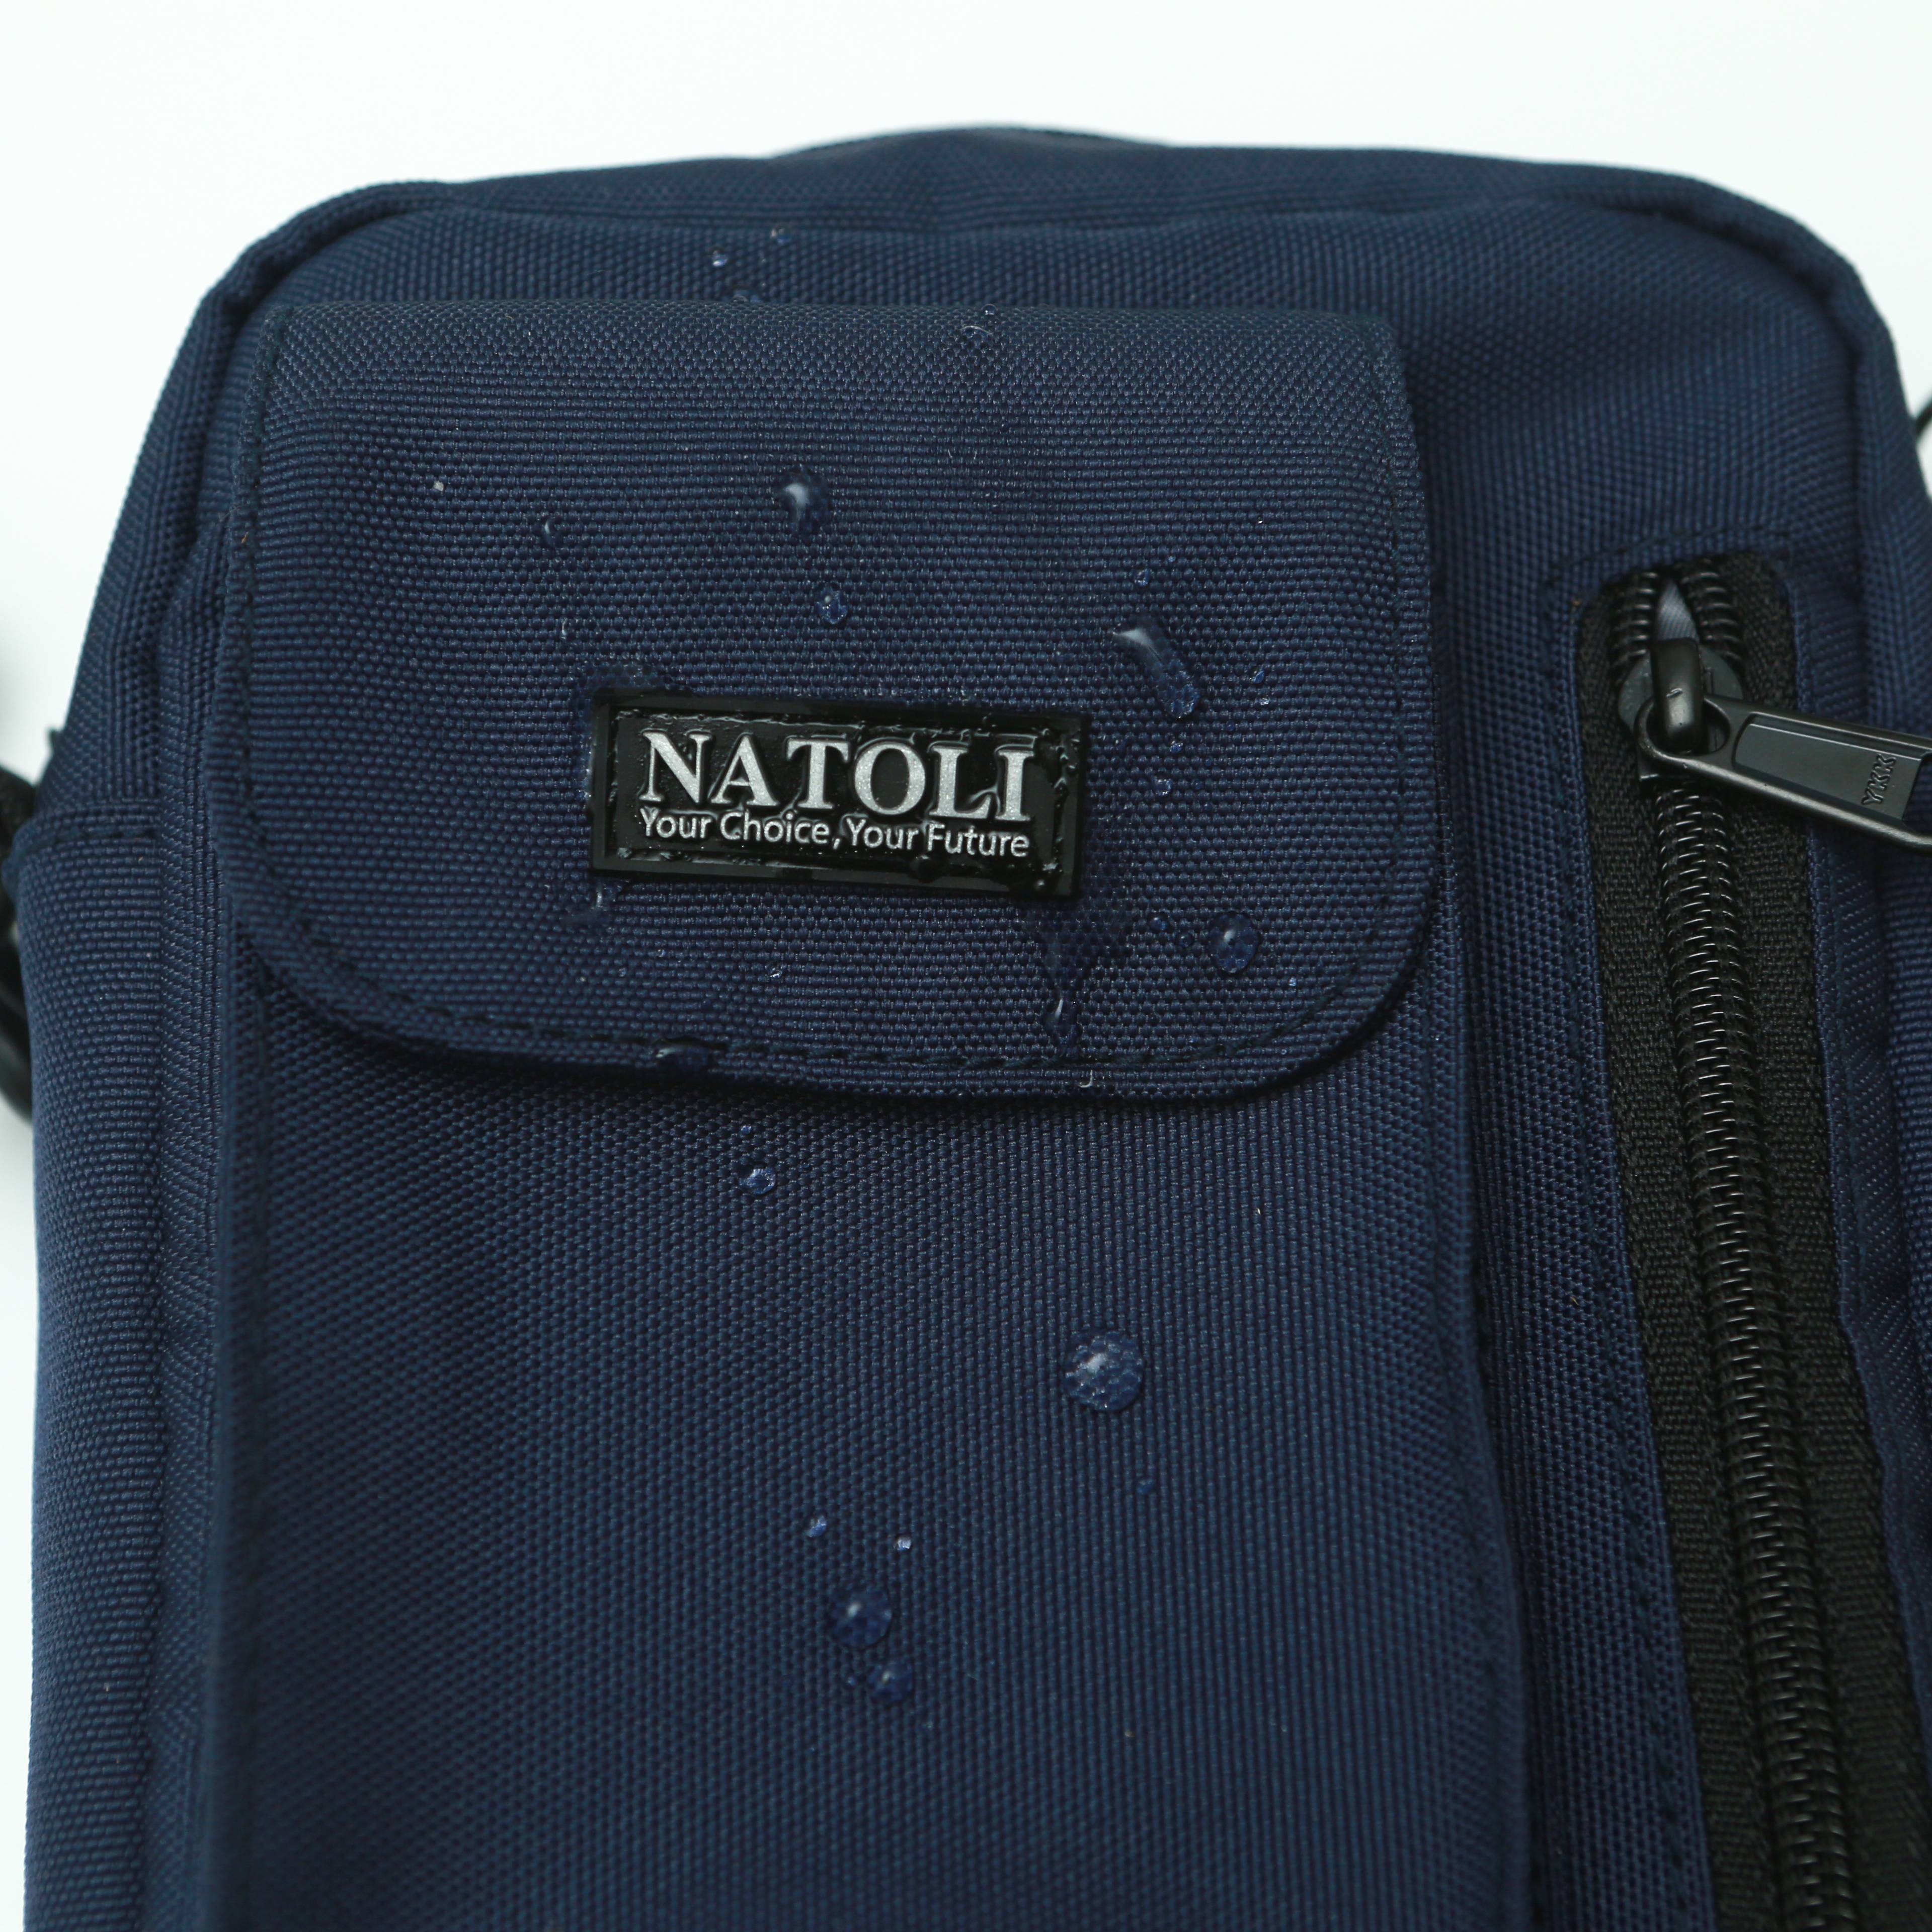 Túi đeo chéo unisex Street Crossbag chính hãng NATOLI chất vải canvas đi học đi chơi nhiều ngăn cá tính đơn giản nhỏ gọn